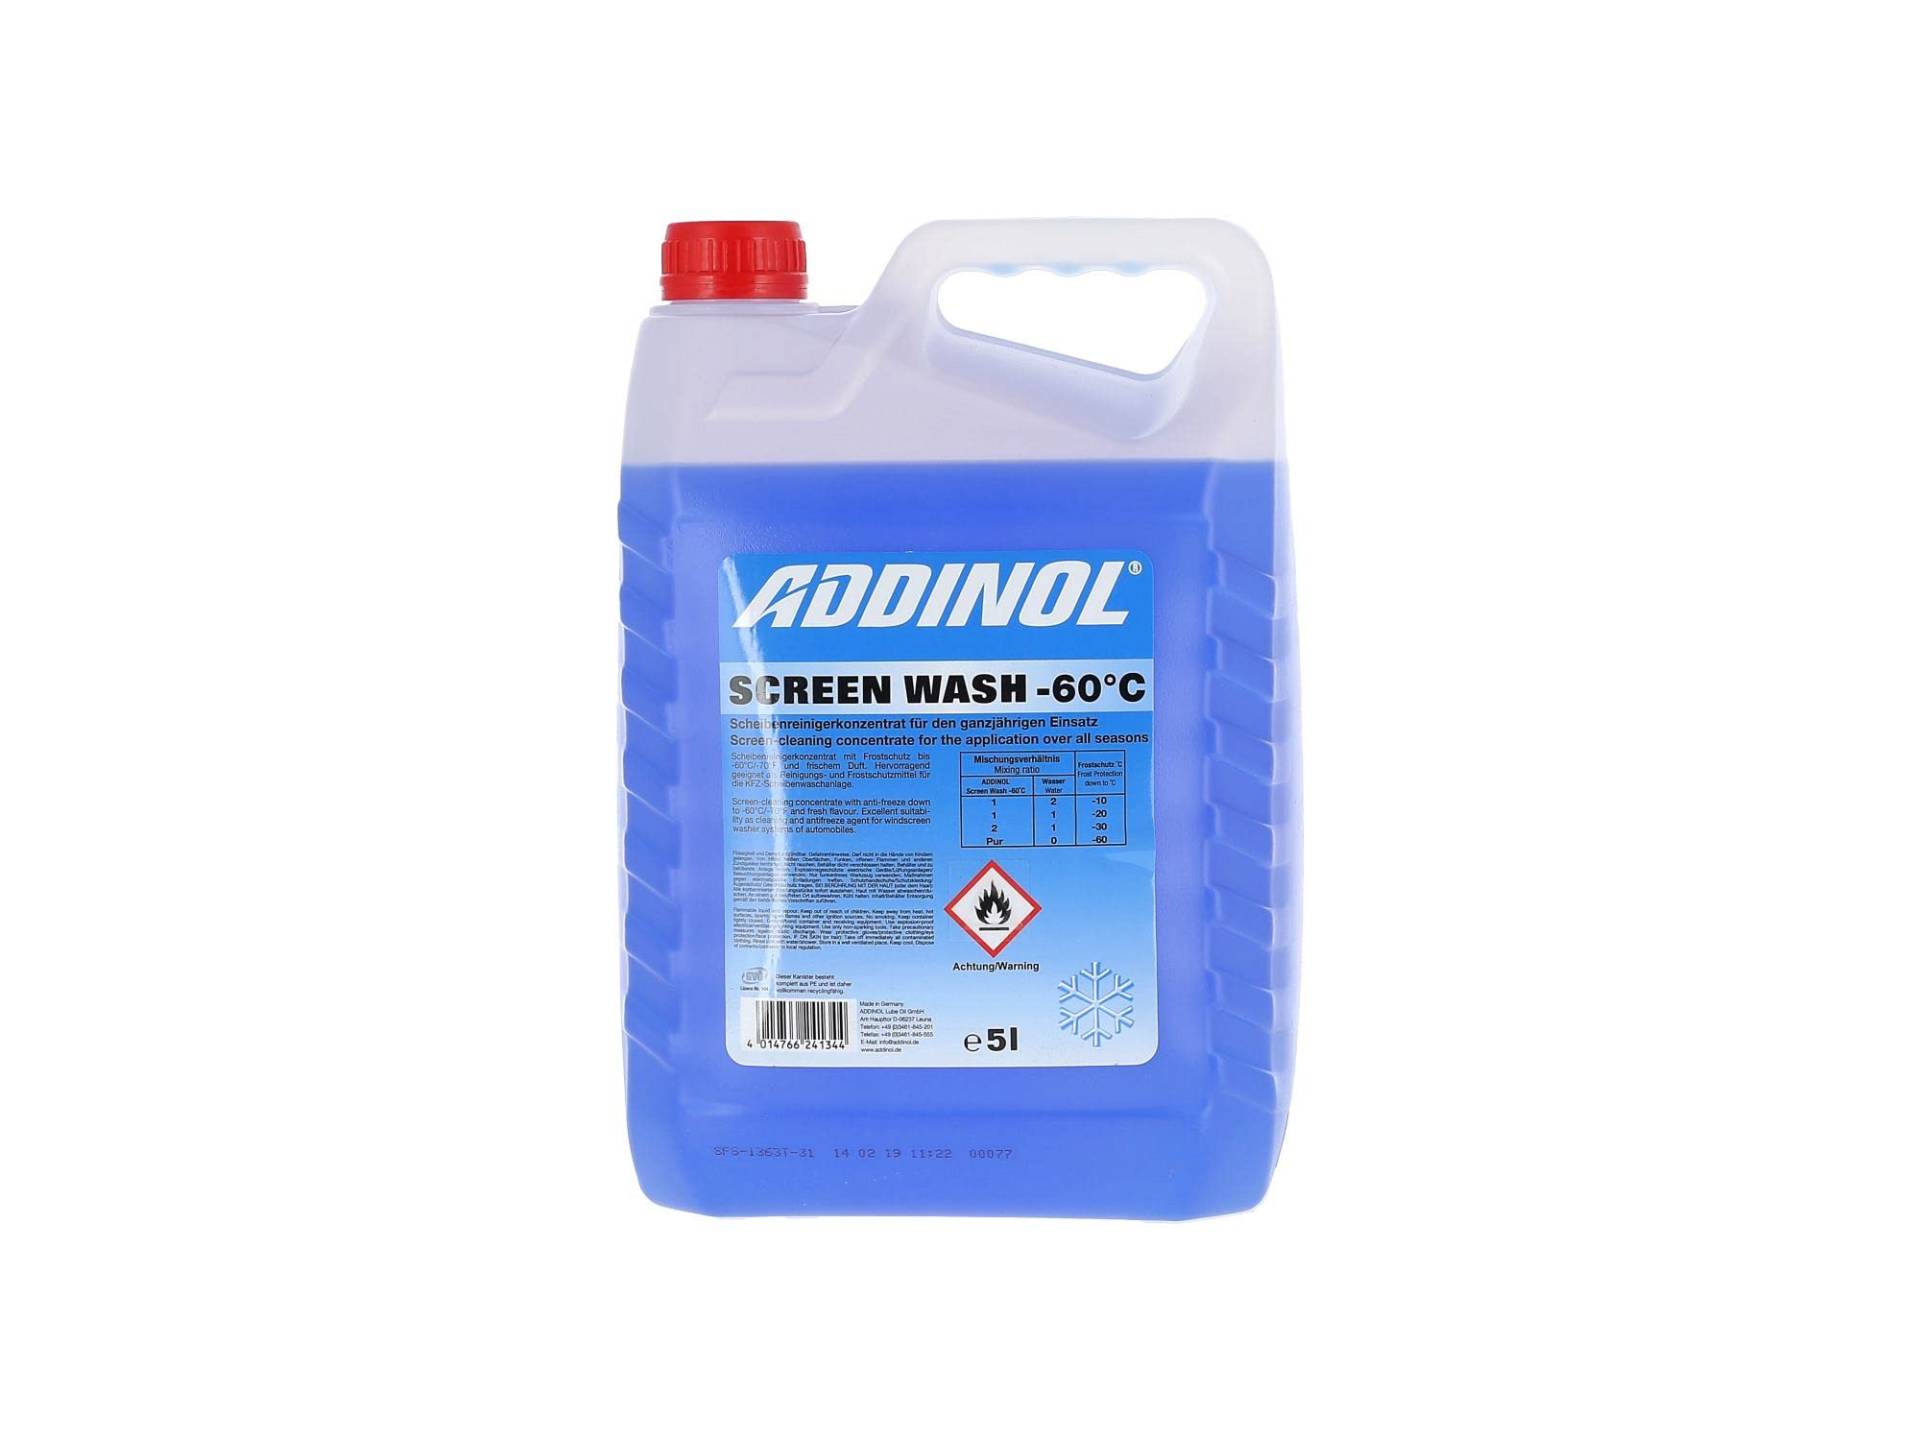 ADDINOL SCREEN WASH -60°C, 5 Liter von Addinol